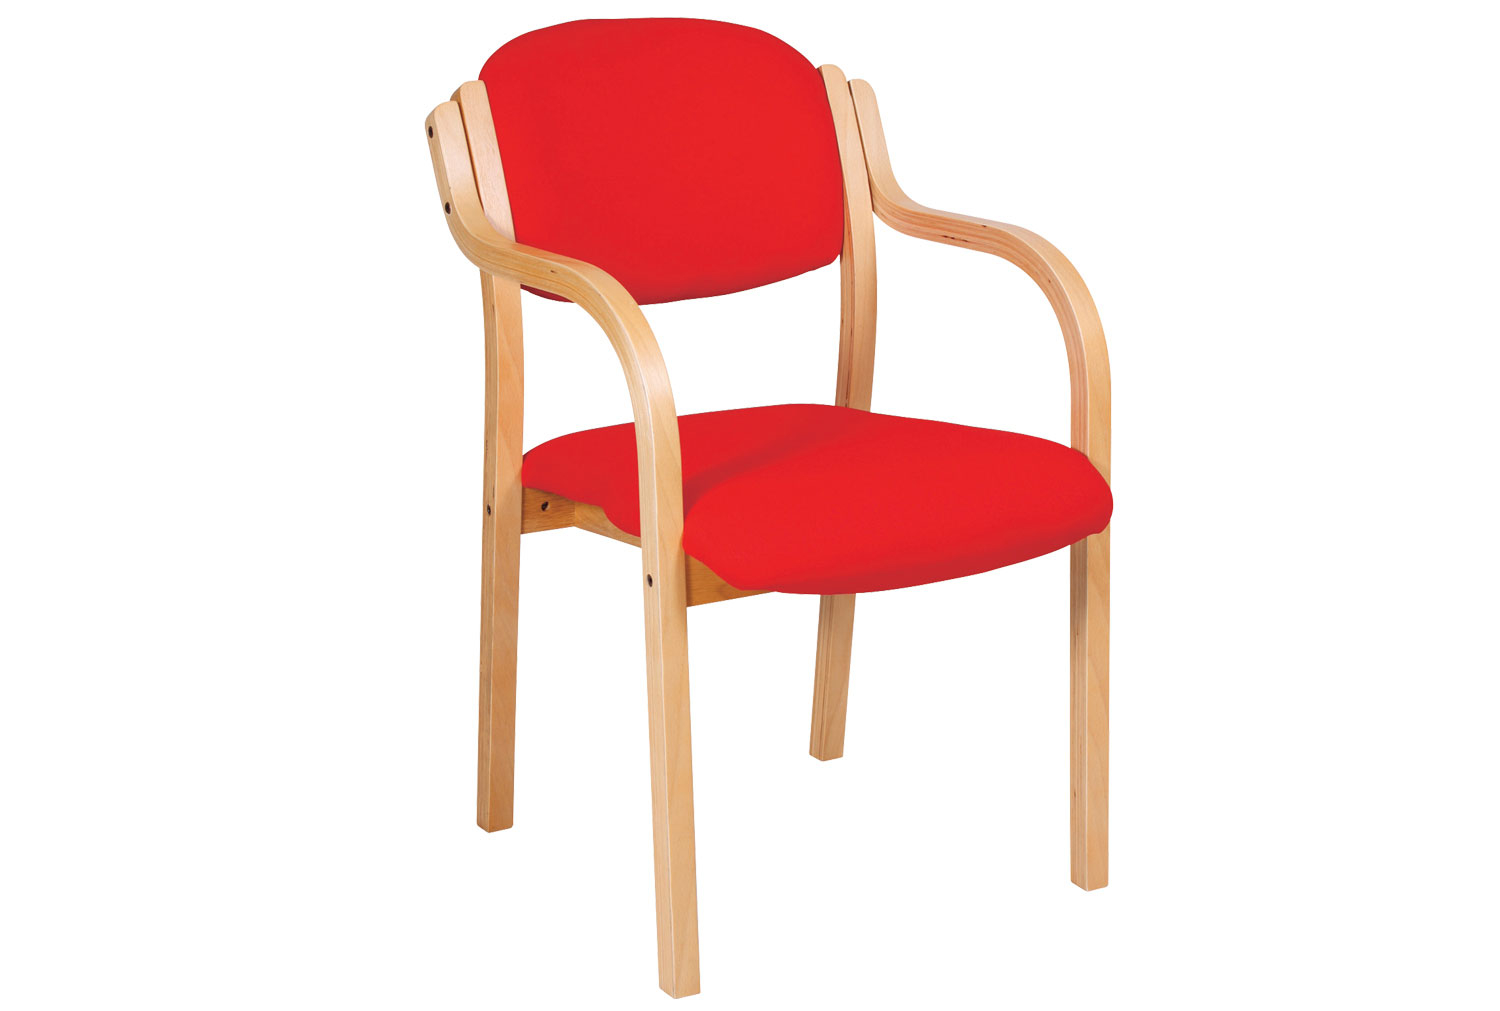 Ricci ArmReception Chair, Hobbit